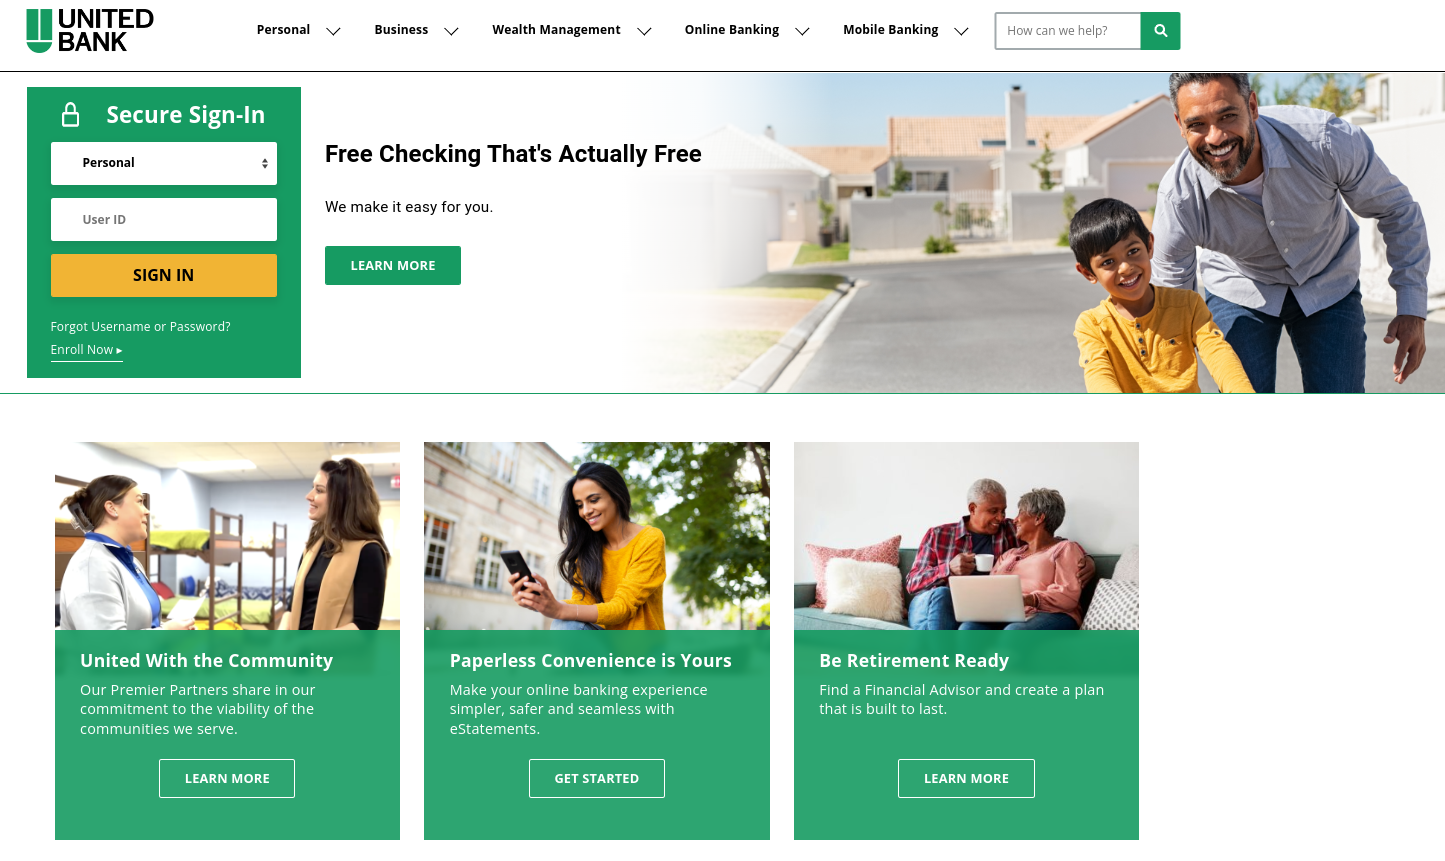 Strona internetowa banku United wykorzystuje kolor zielony, aby wyróżnić najważniejsze sekcje